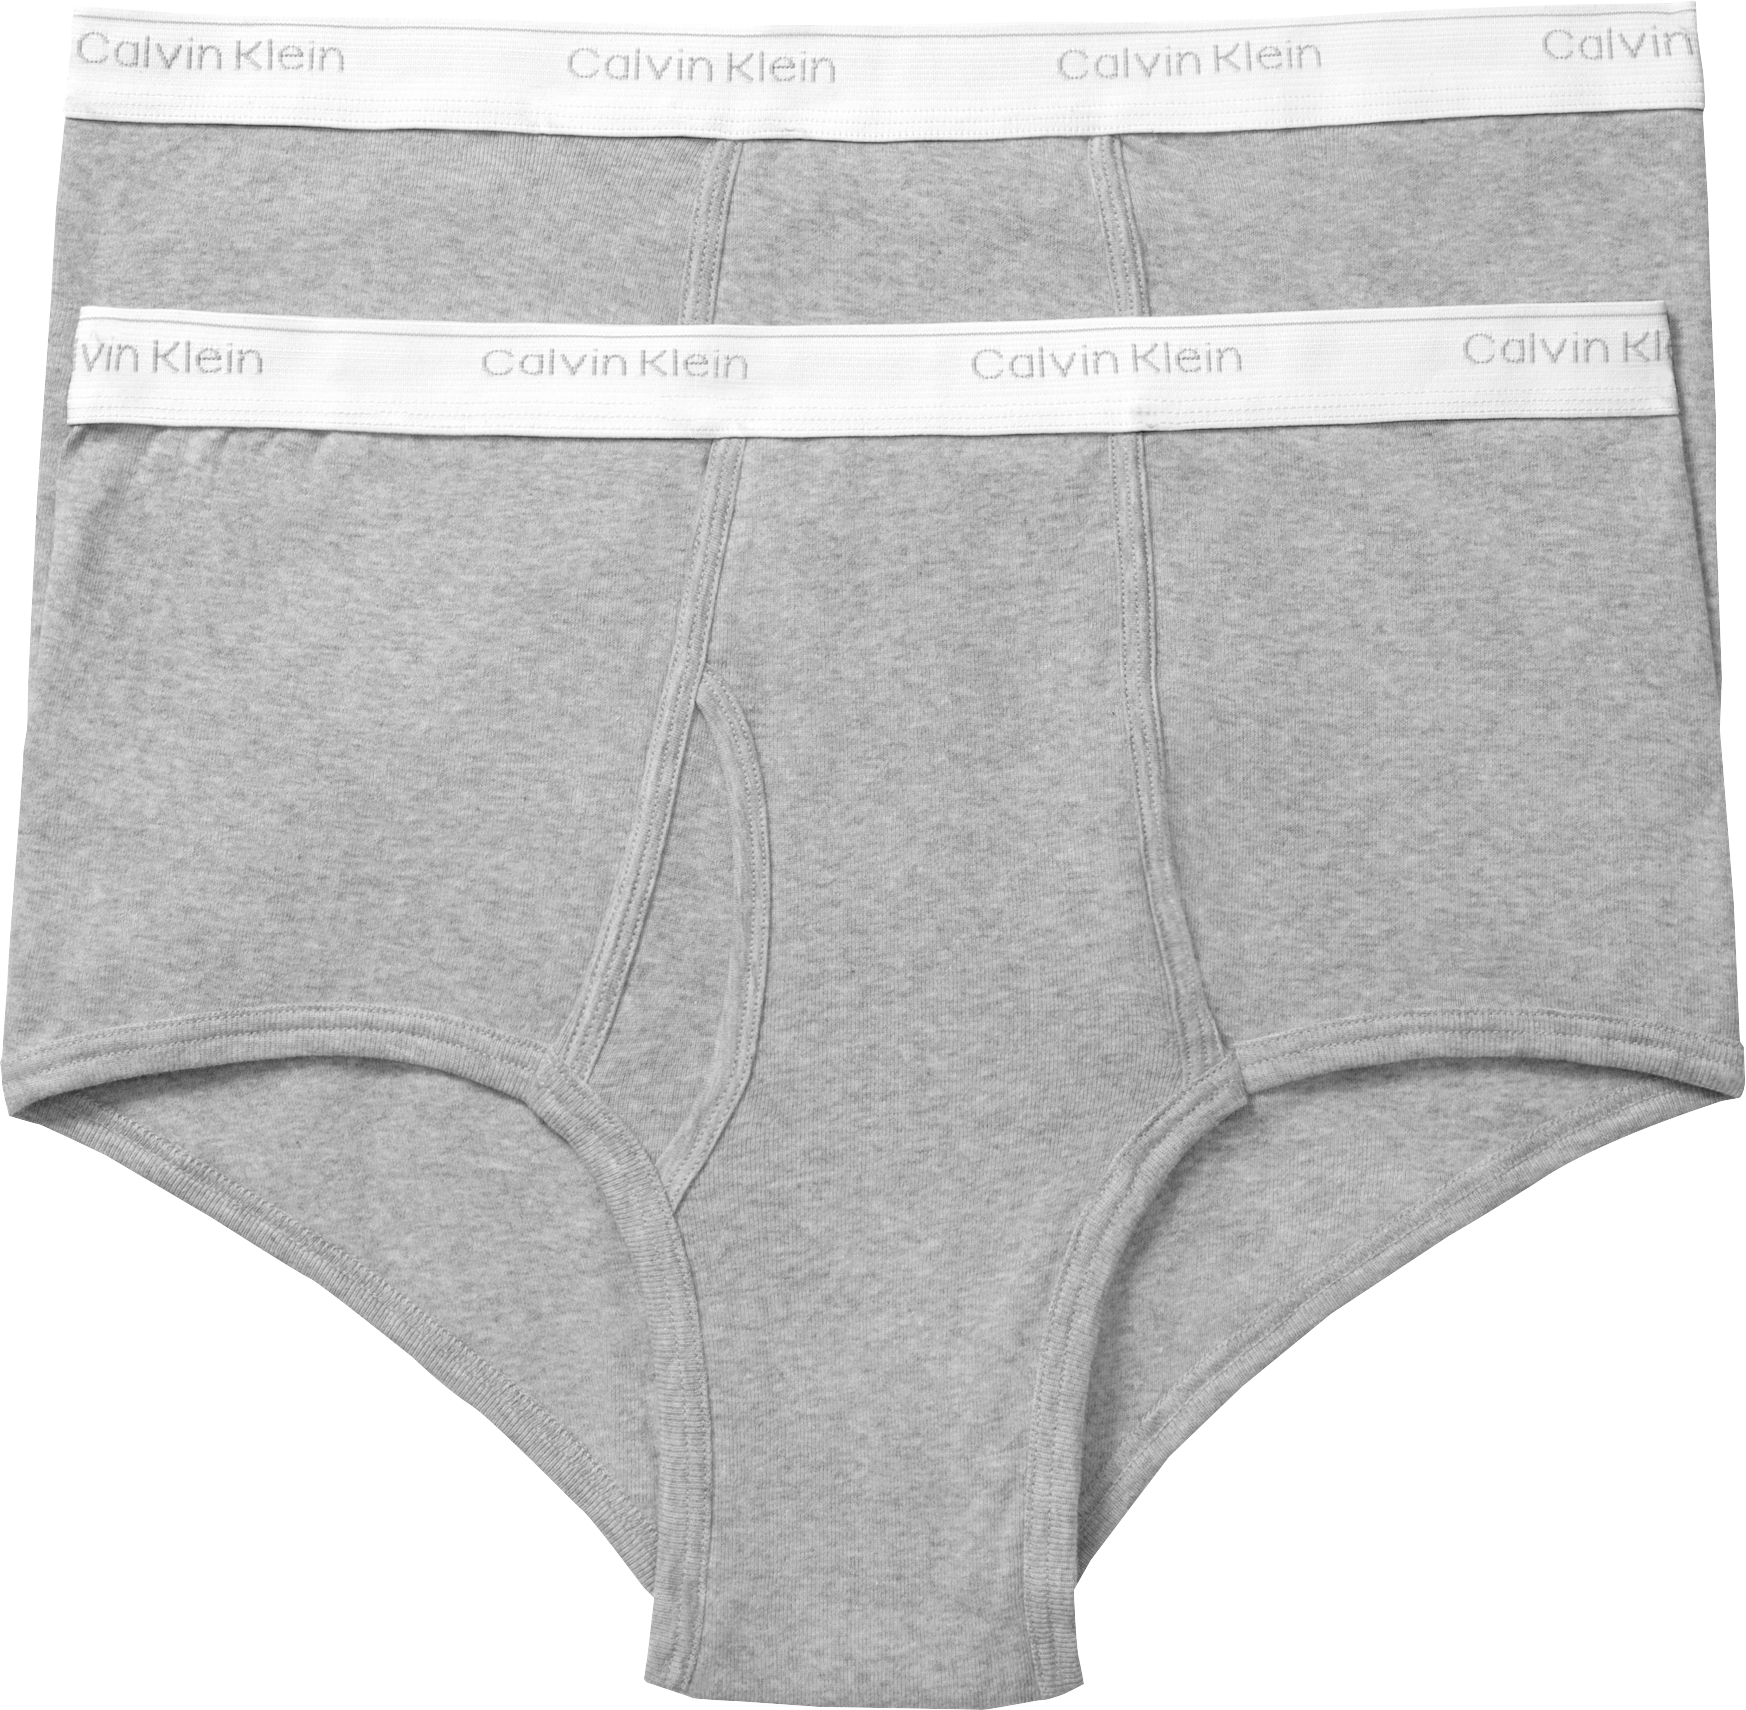 calvin klein men's big tall underwear